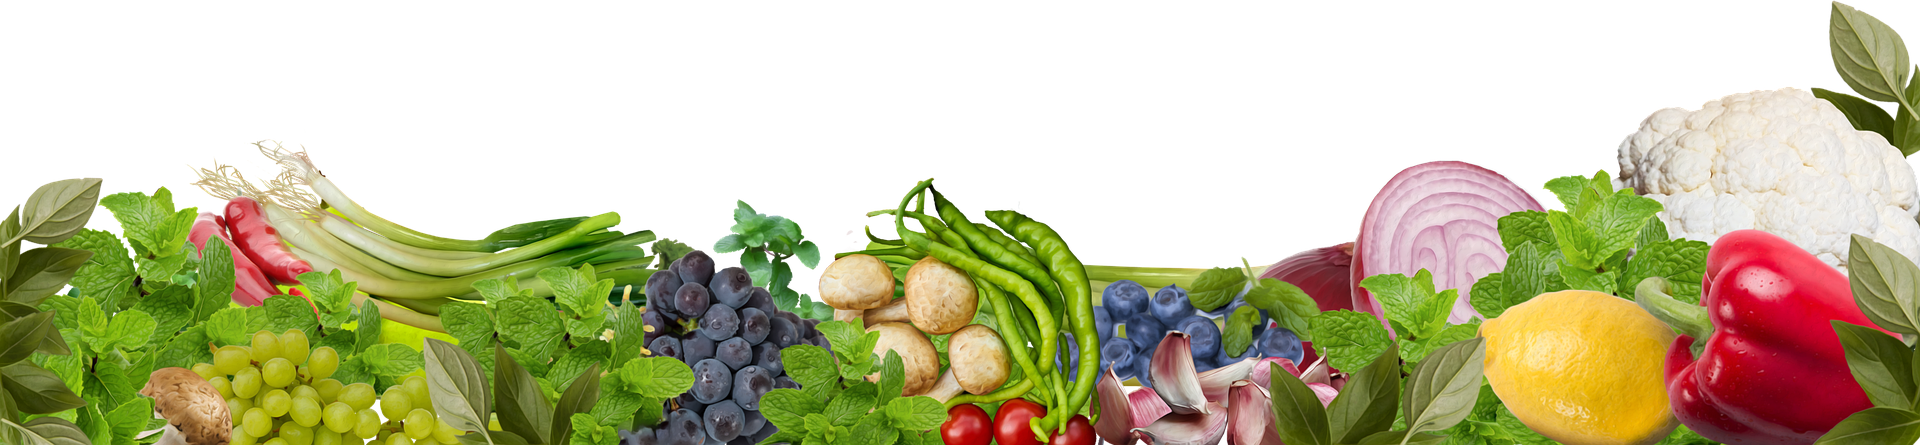 Verschiedenes Gemüse; Foto: pixabay.com